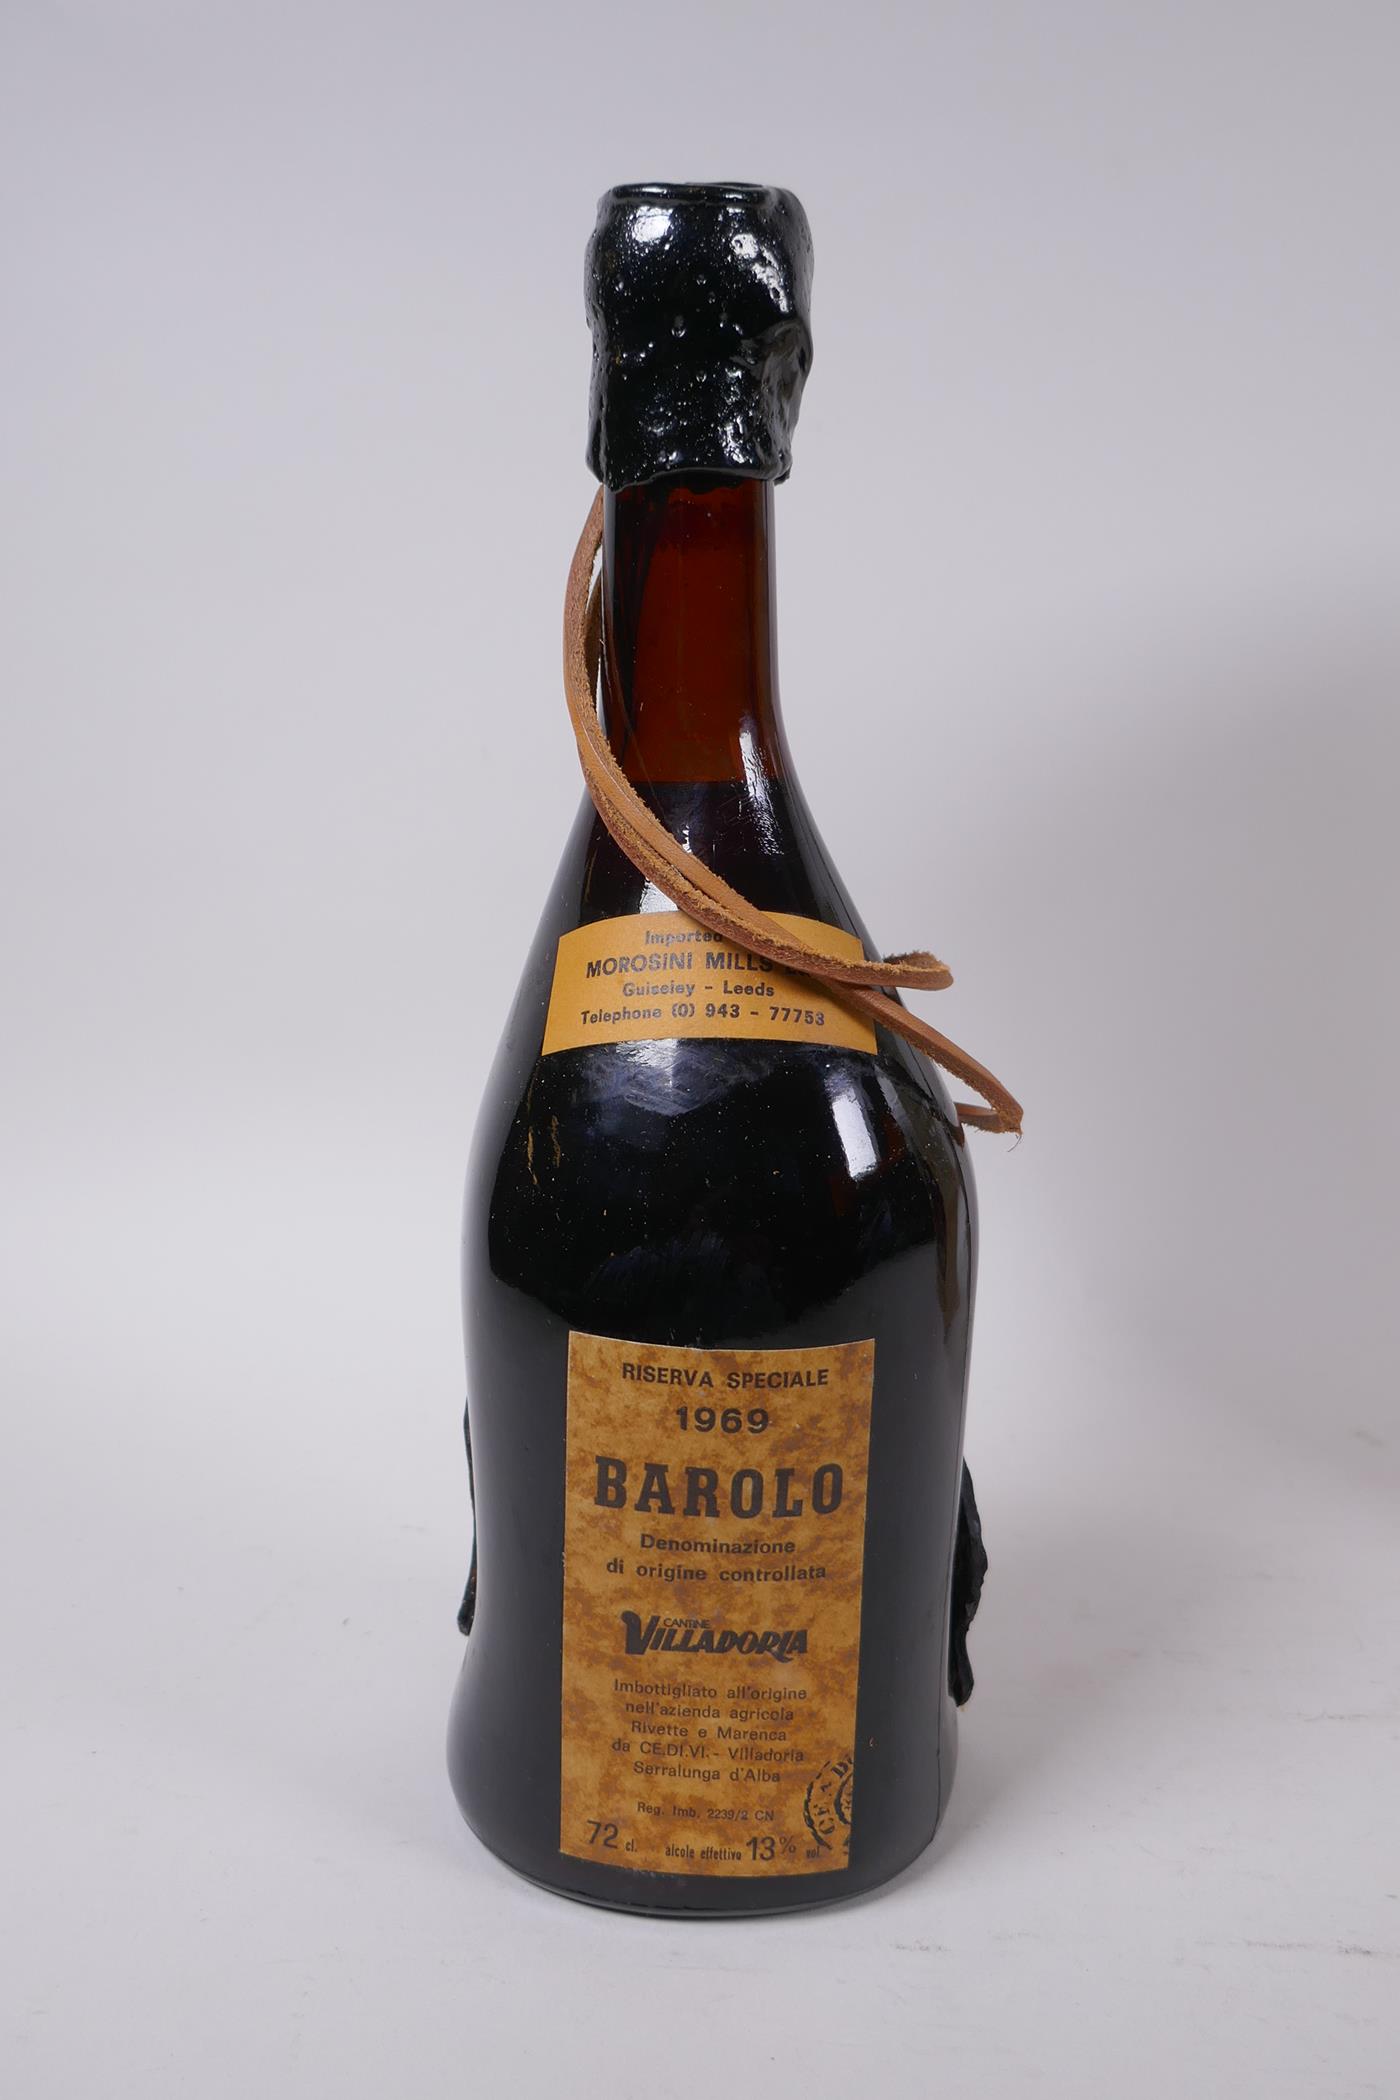 A bottle of Villadoria Barolo Riserva Speciale, 1969, 72cm, with original box - Image 4 of 6